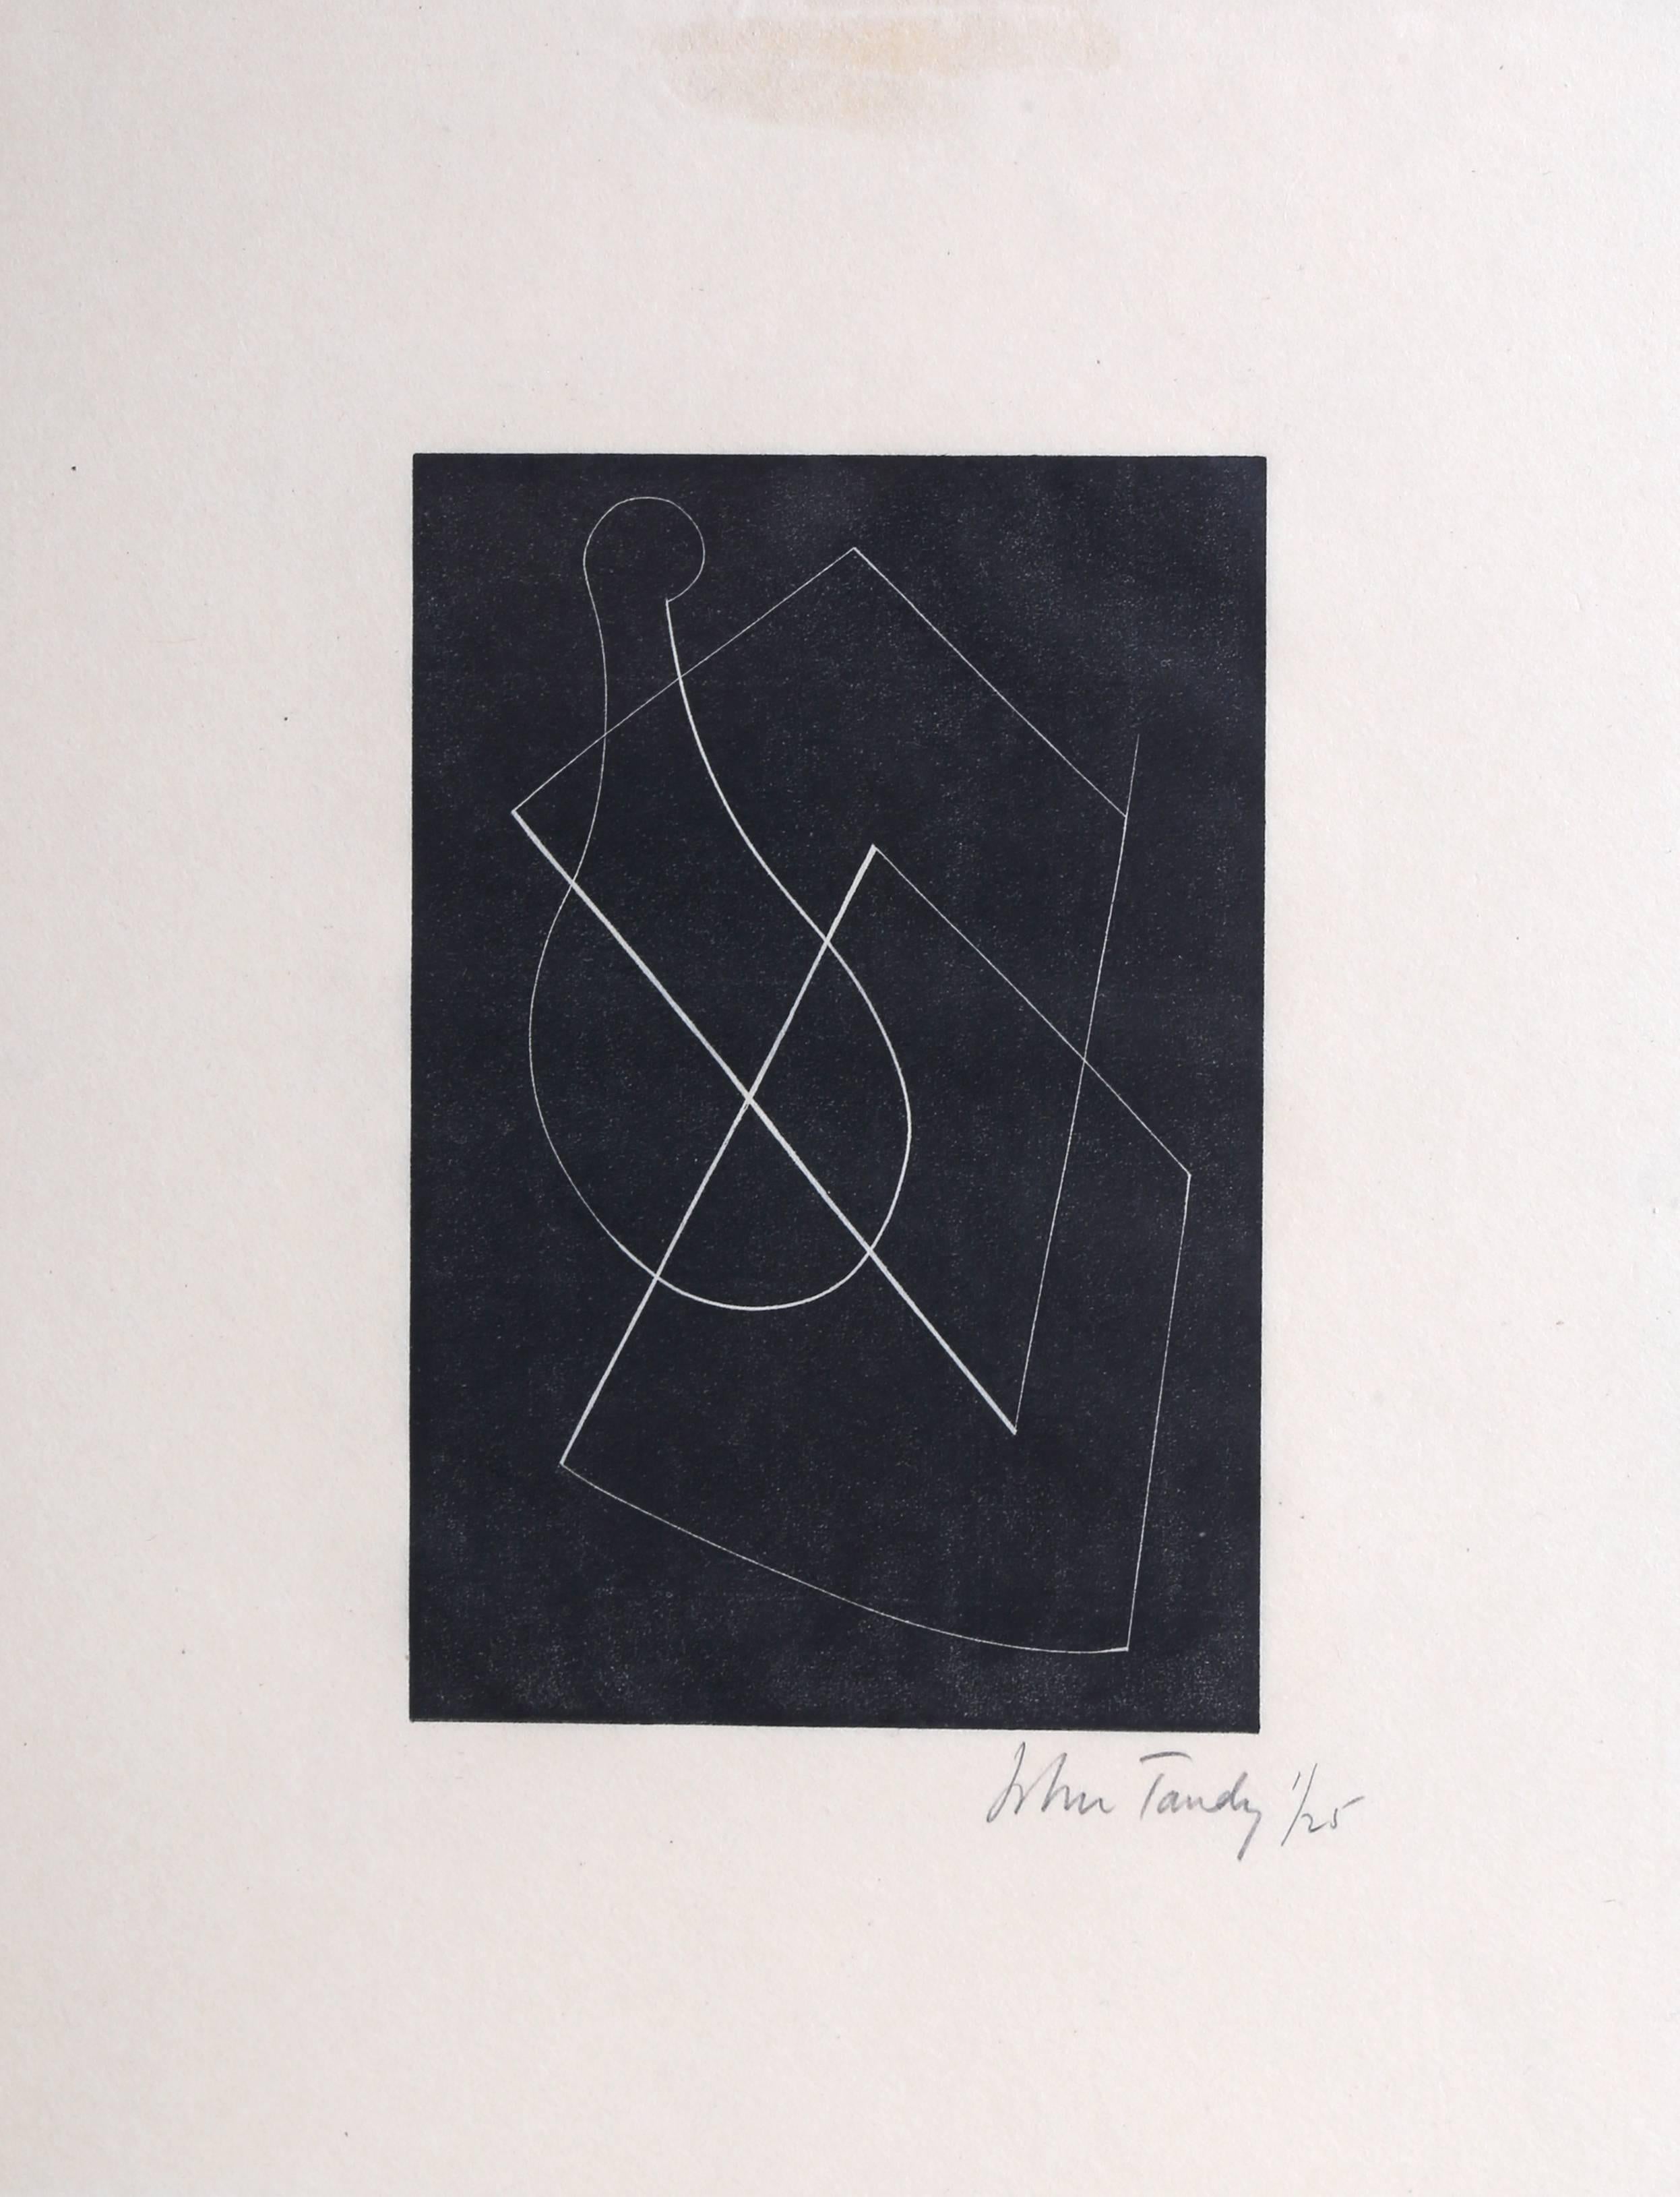 John Tandy Abstract Print - Modern Abstract Woodcut c1928